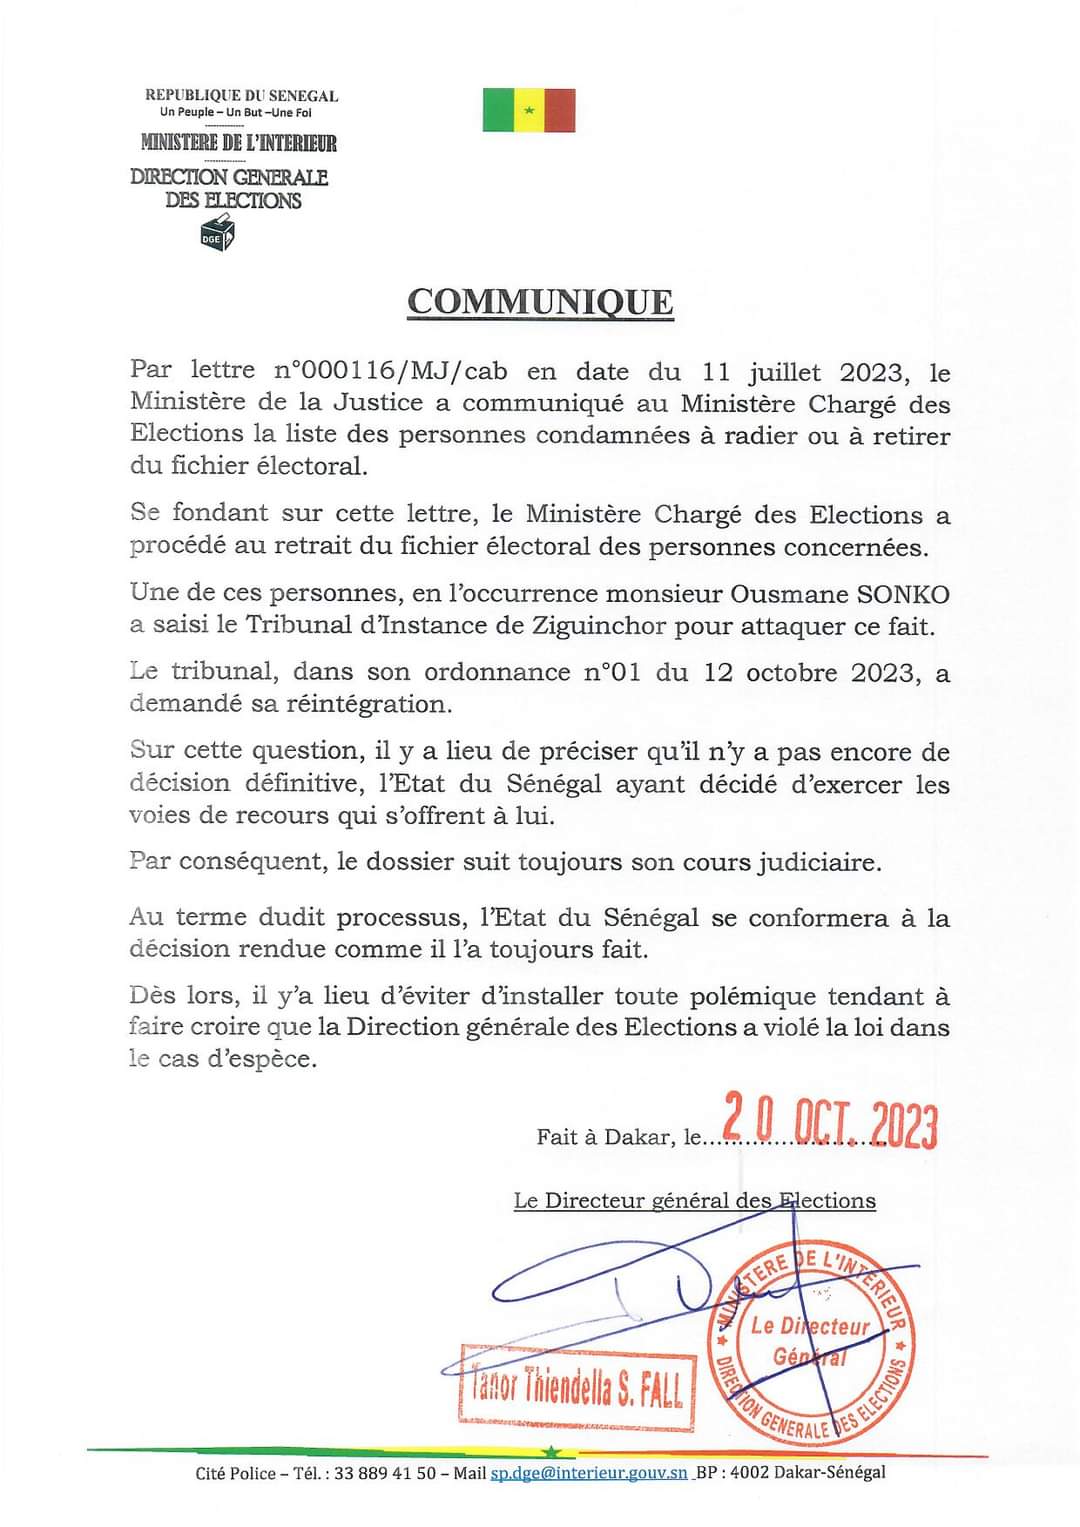 Communiqué Direction général des élections sur l'affaire Ousmane SONKO